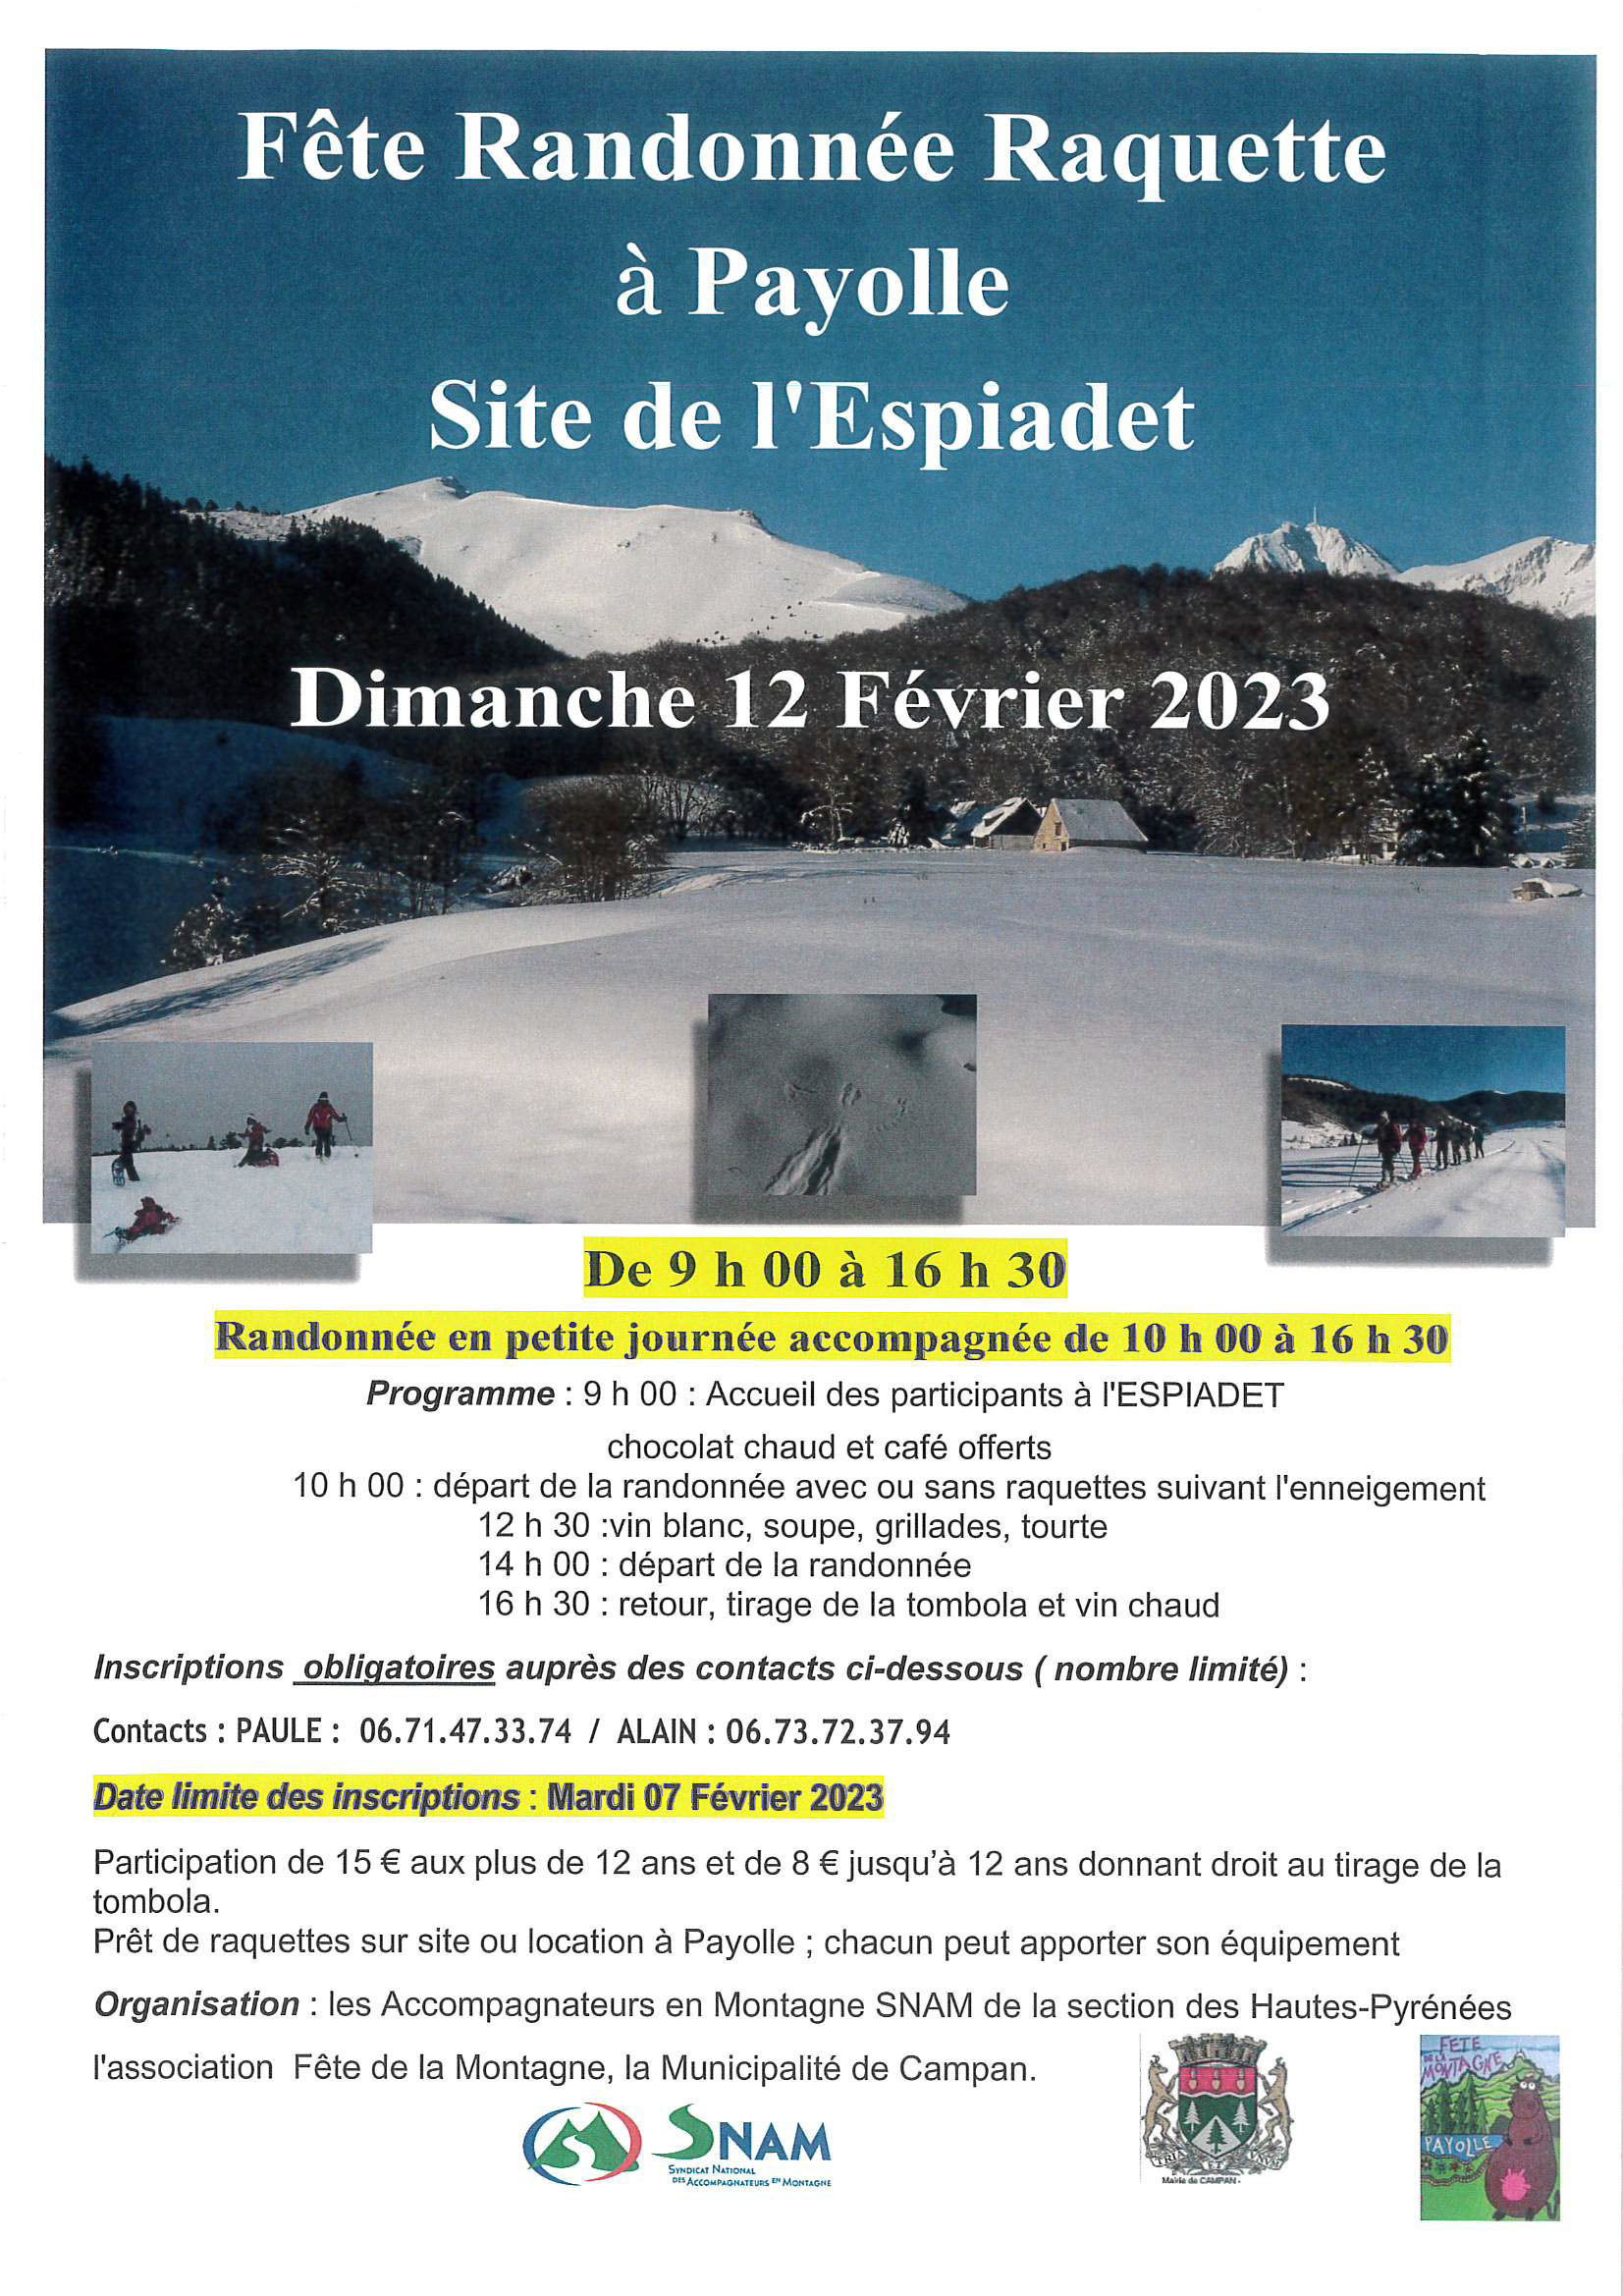 Fête de la randonnée raquette à Payolle février 2023 - affiche